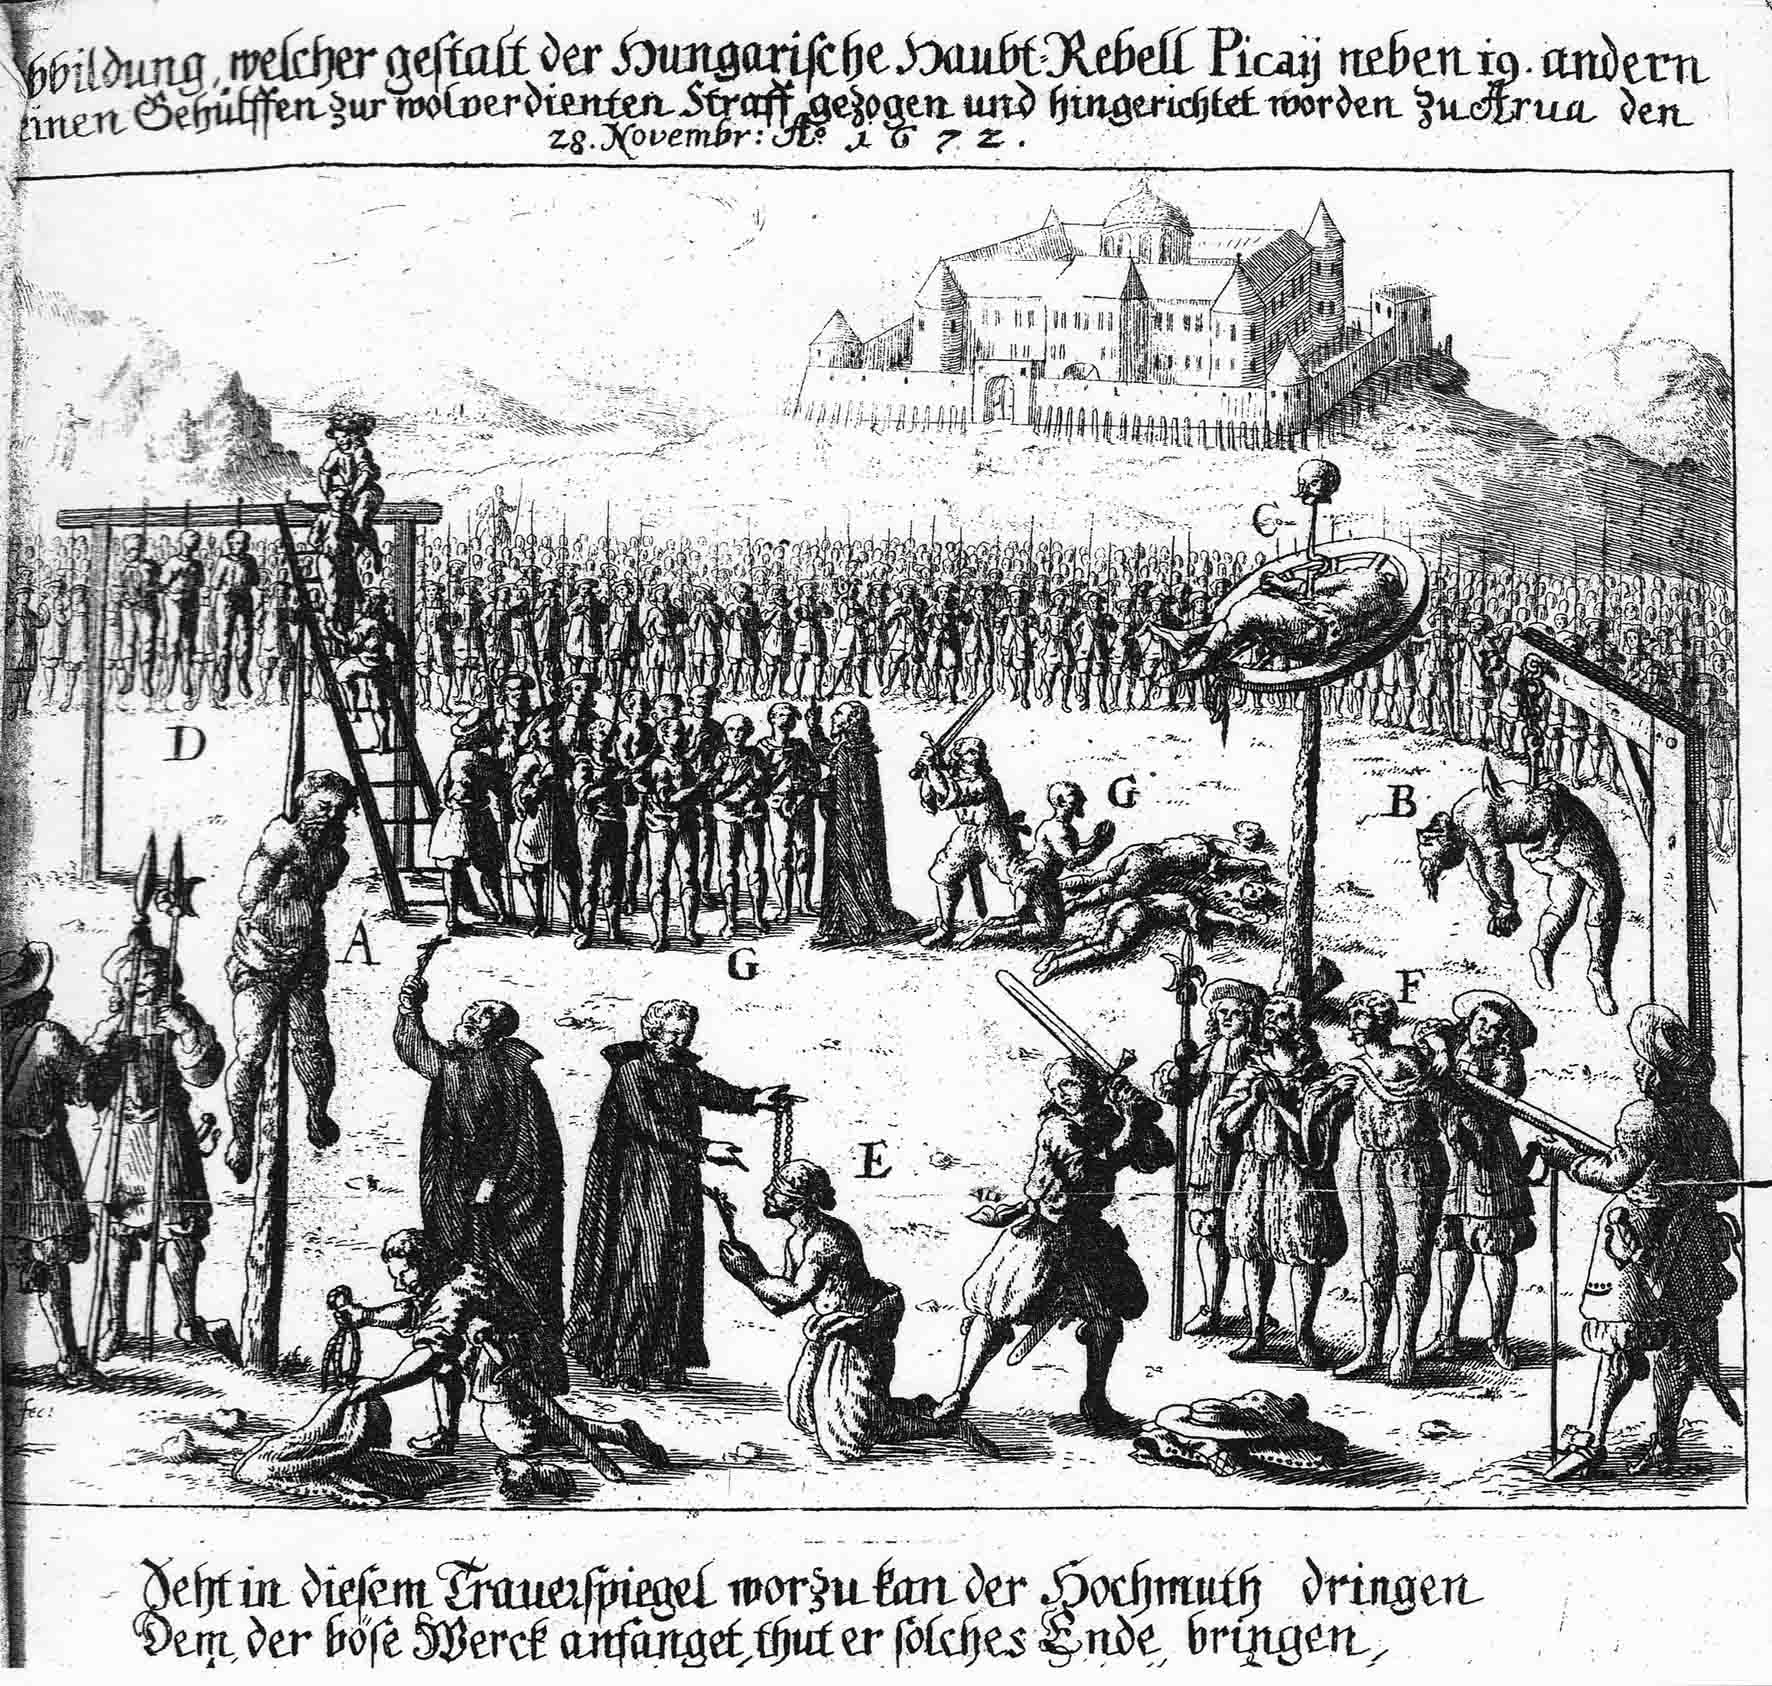 Abbildung, welcher gestalt der Hungarische Haupt-Rebell Picaij neben 19 andern seinen Gehülffen zur wolverdineten Straff gezogen und hingerichtet worden zu Arua den 28. Novembr Ao. 1672.